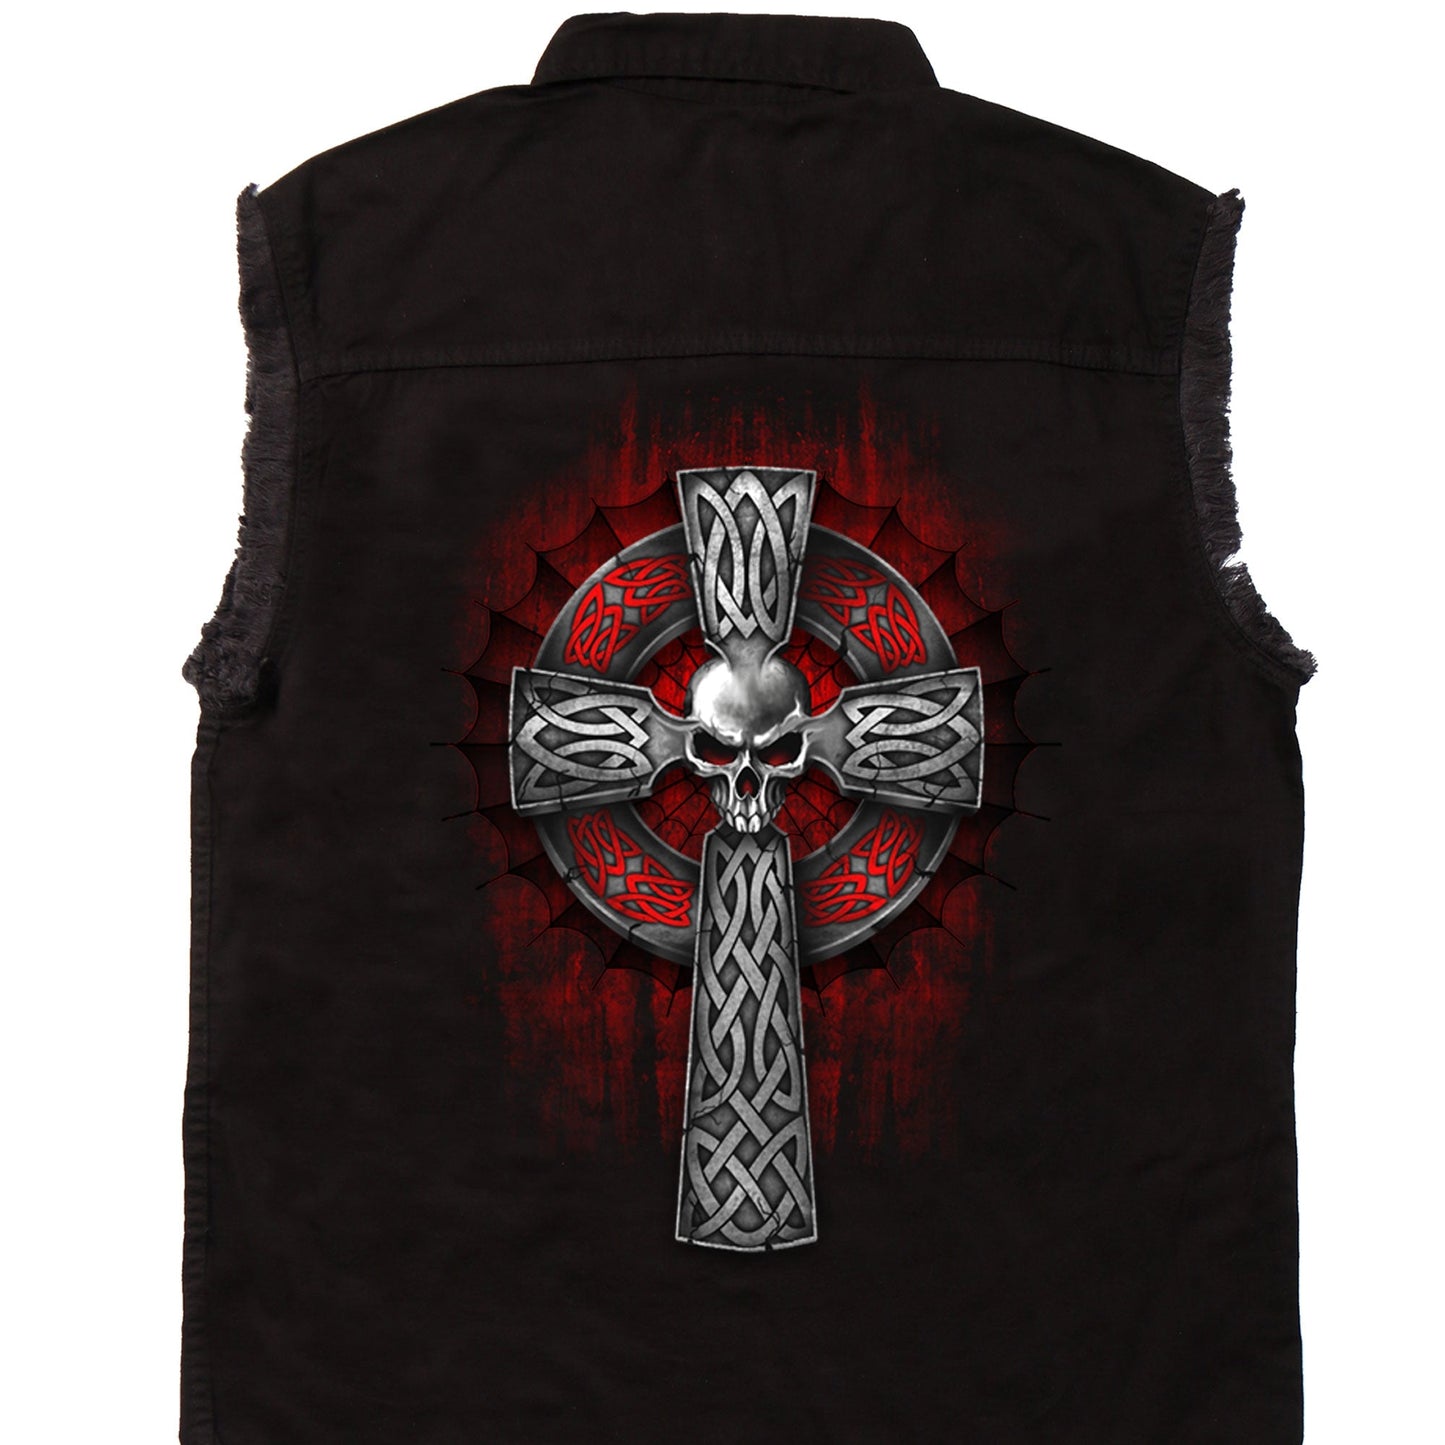 Mens 'Celtic Cross' Sleeveless Denim Black Shirt